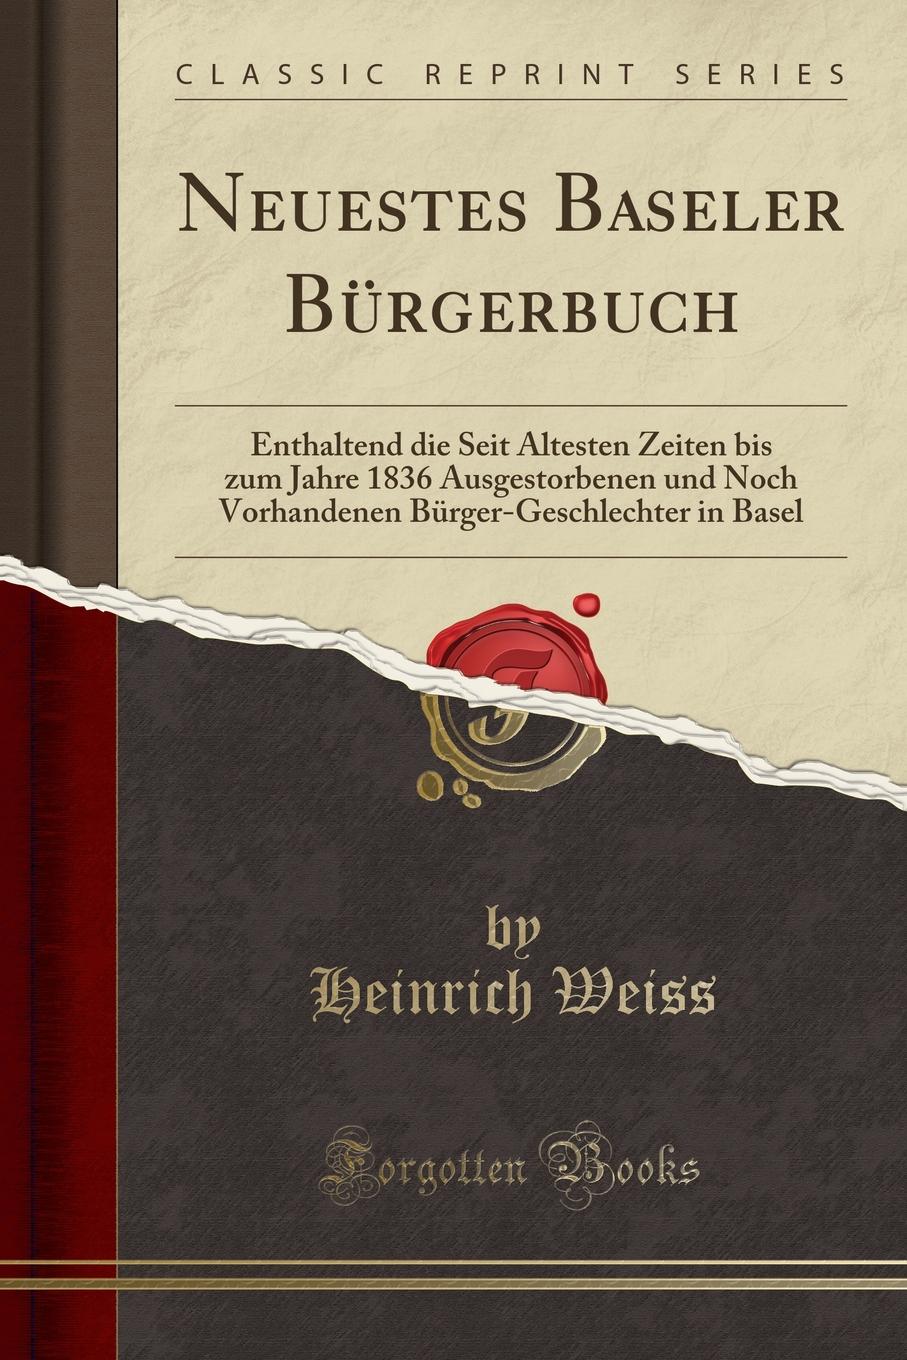 Neuestes Baseler Burgerbuch. Enthaltend die Seit Altesten Zeiten bis zum Jahre 1836 Ausgestorbenen und Noch Vorhandenen Burger-Geschlechter in Basel (Classic Reprint)